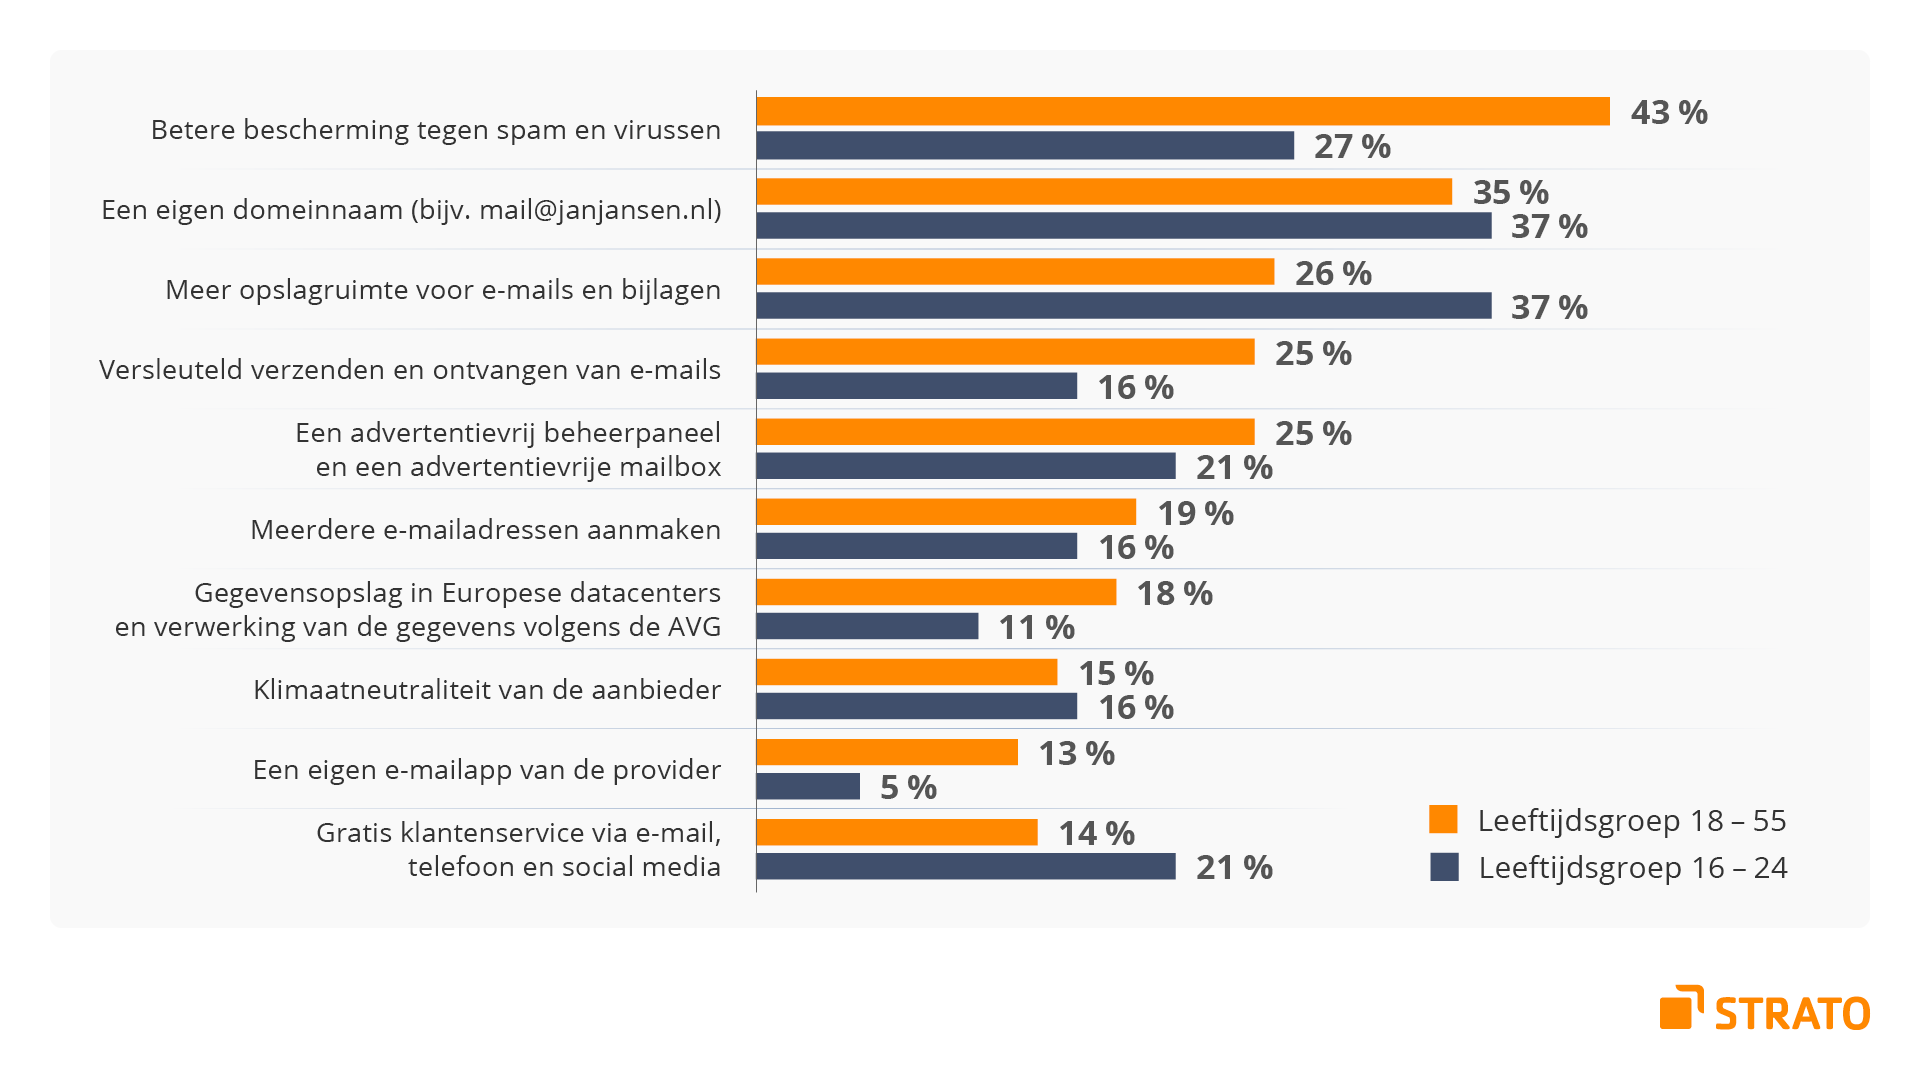 Infographic: betere bescherming tegen spam en virussen is voor Nederlanders de belangrijkste reden om te betalen voor een e-mailadres